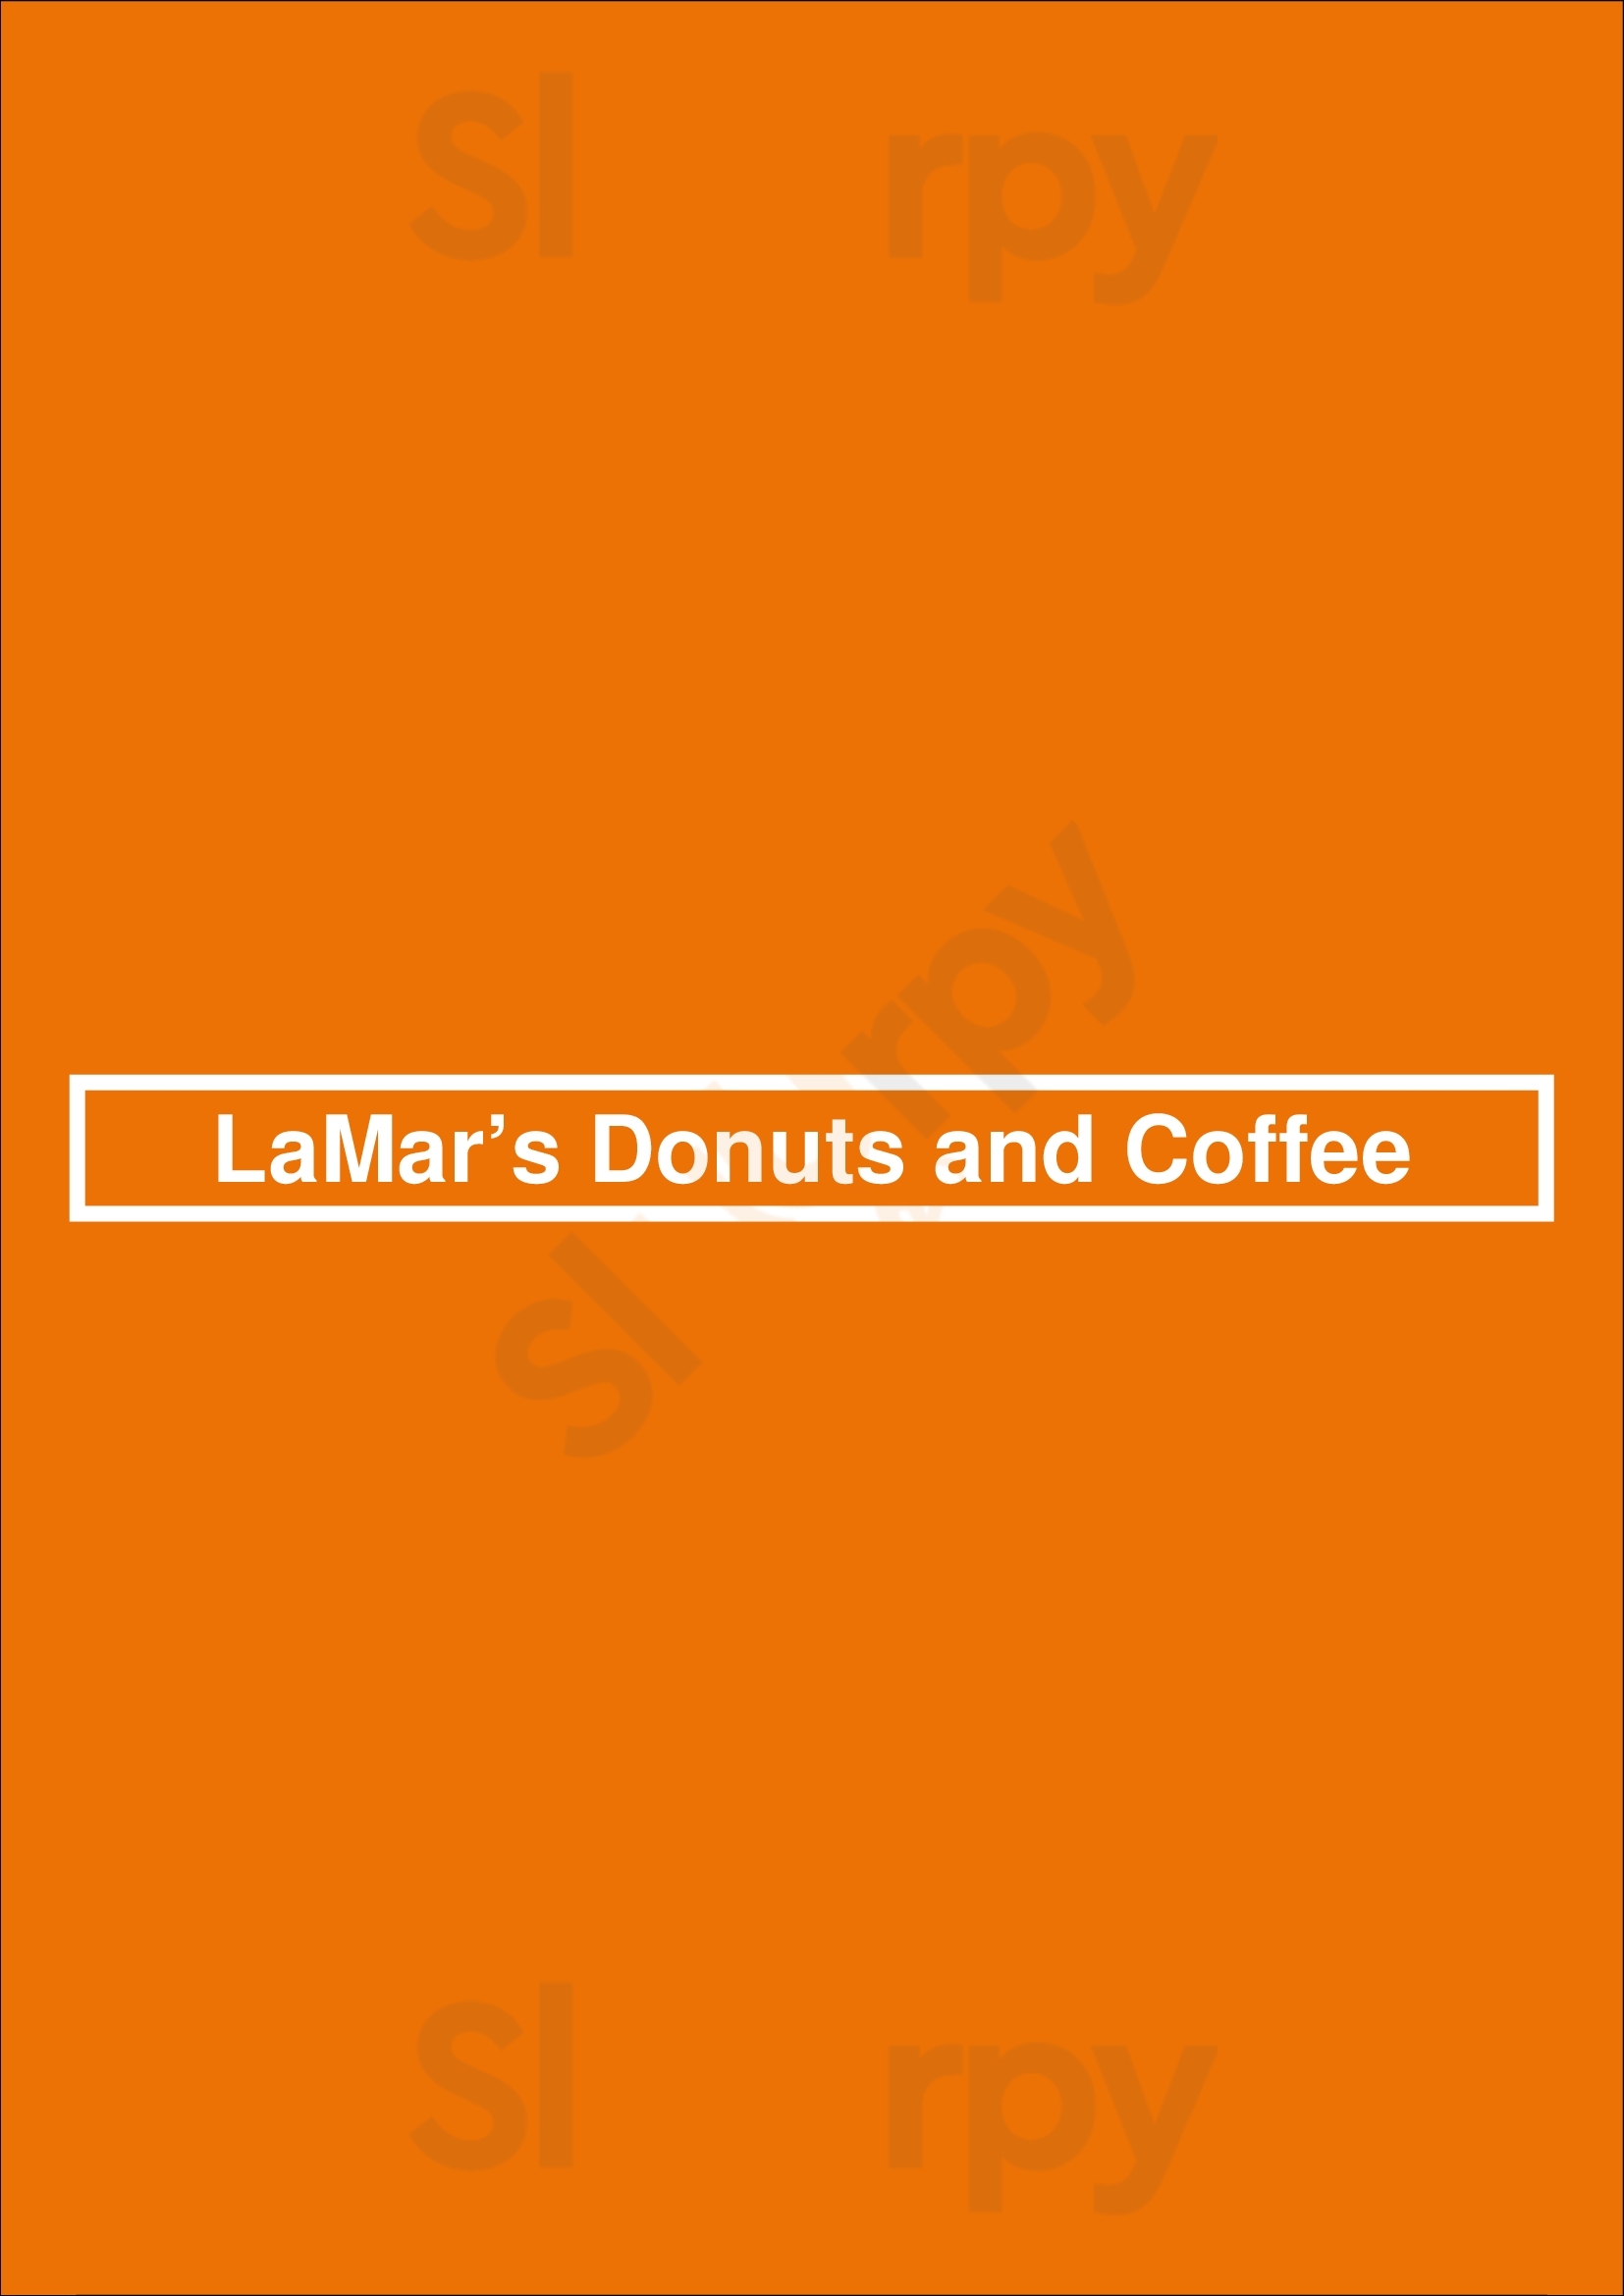 Lamar’s Donuts And Coffee Denver Menu - 1